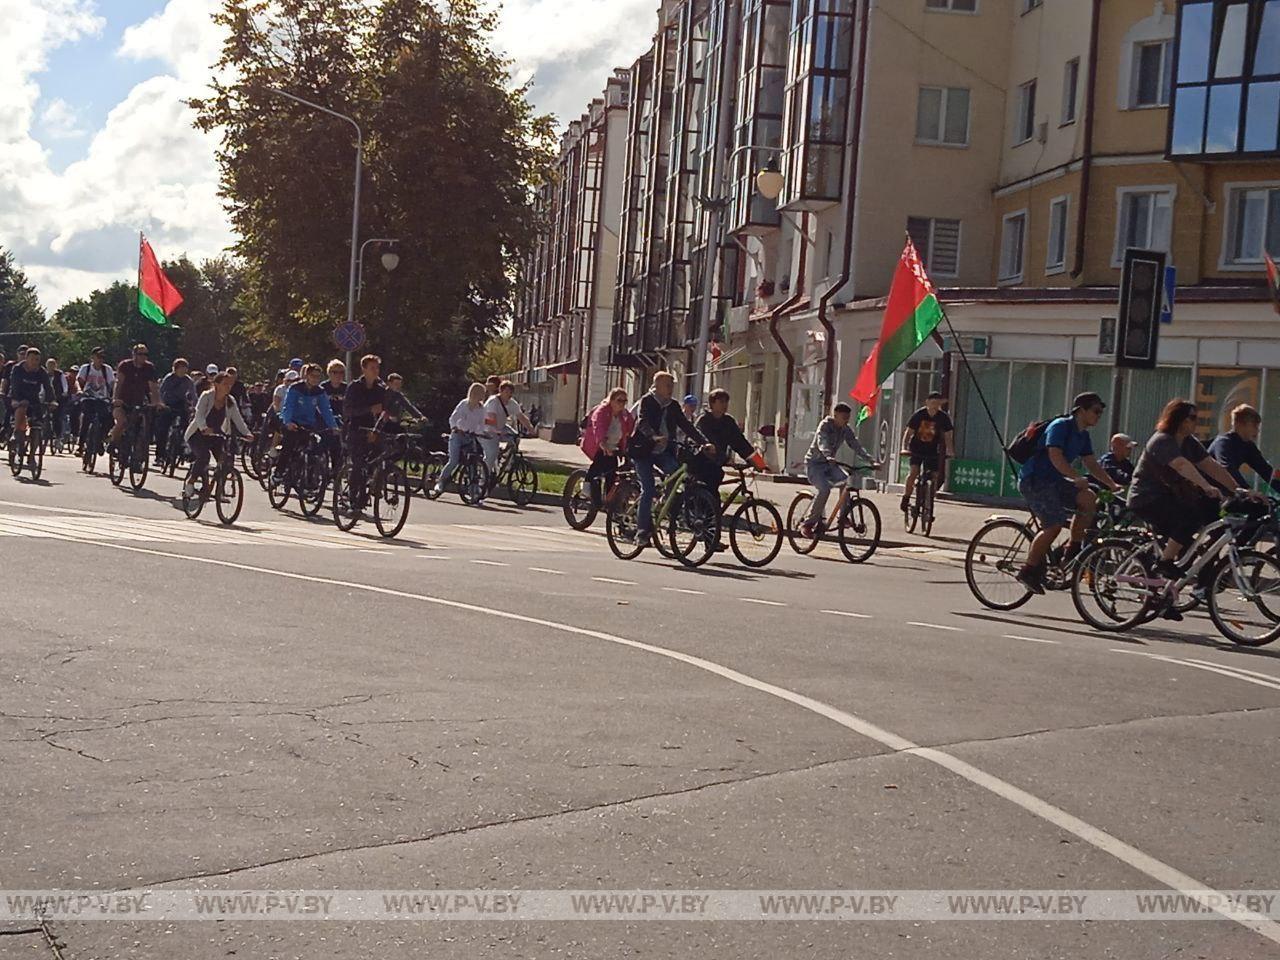 Участники велопробега "Сила в единстве" прокатились по улицам Пинска